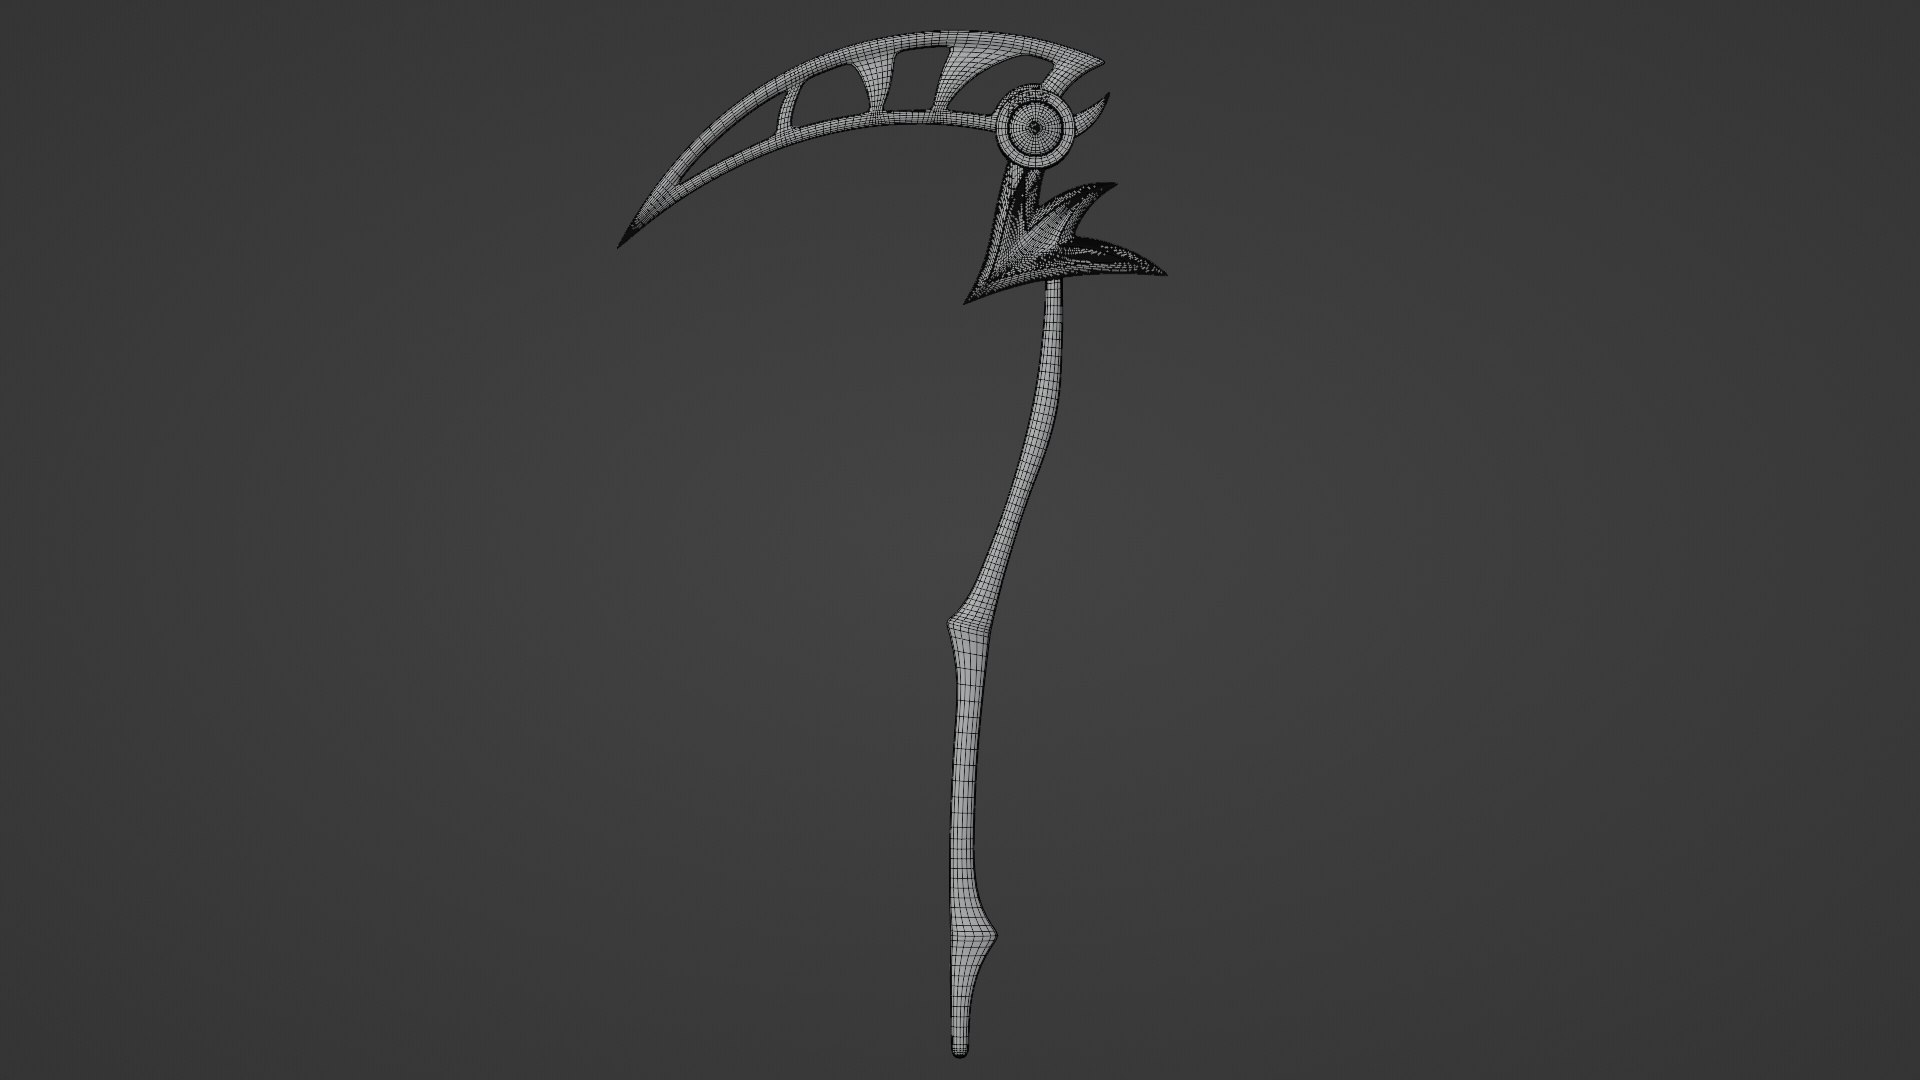 3D Grim Reaper Holding A Scythe Model - TurboSquid 1801918